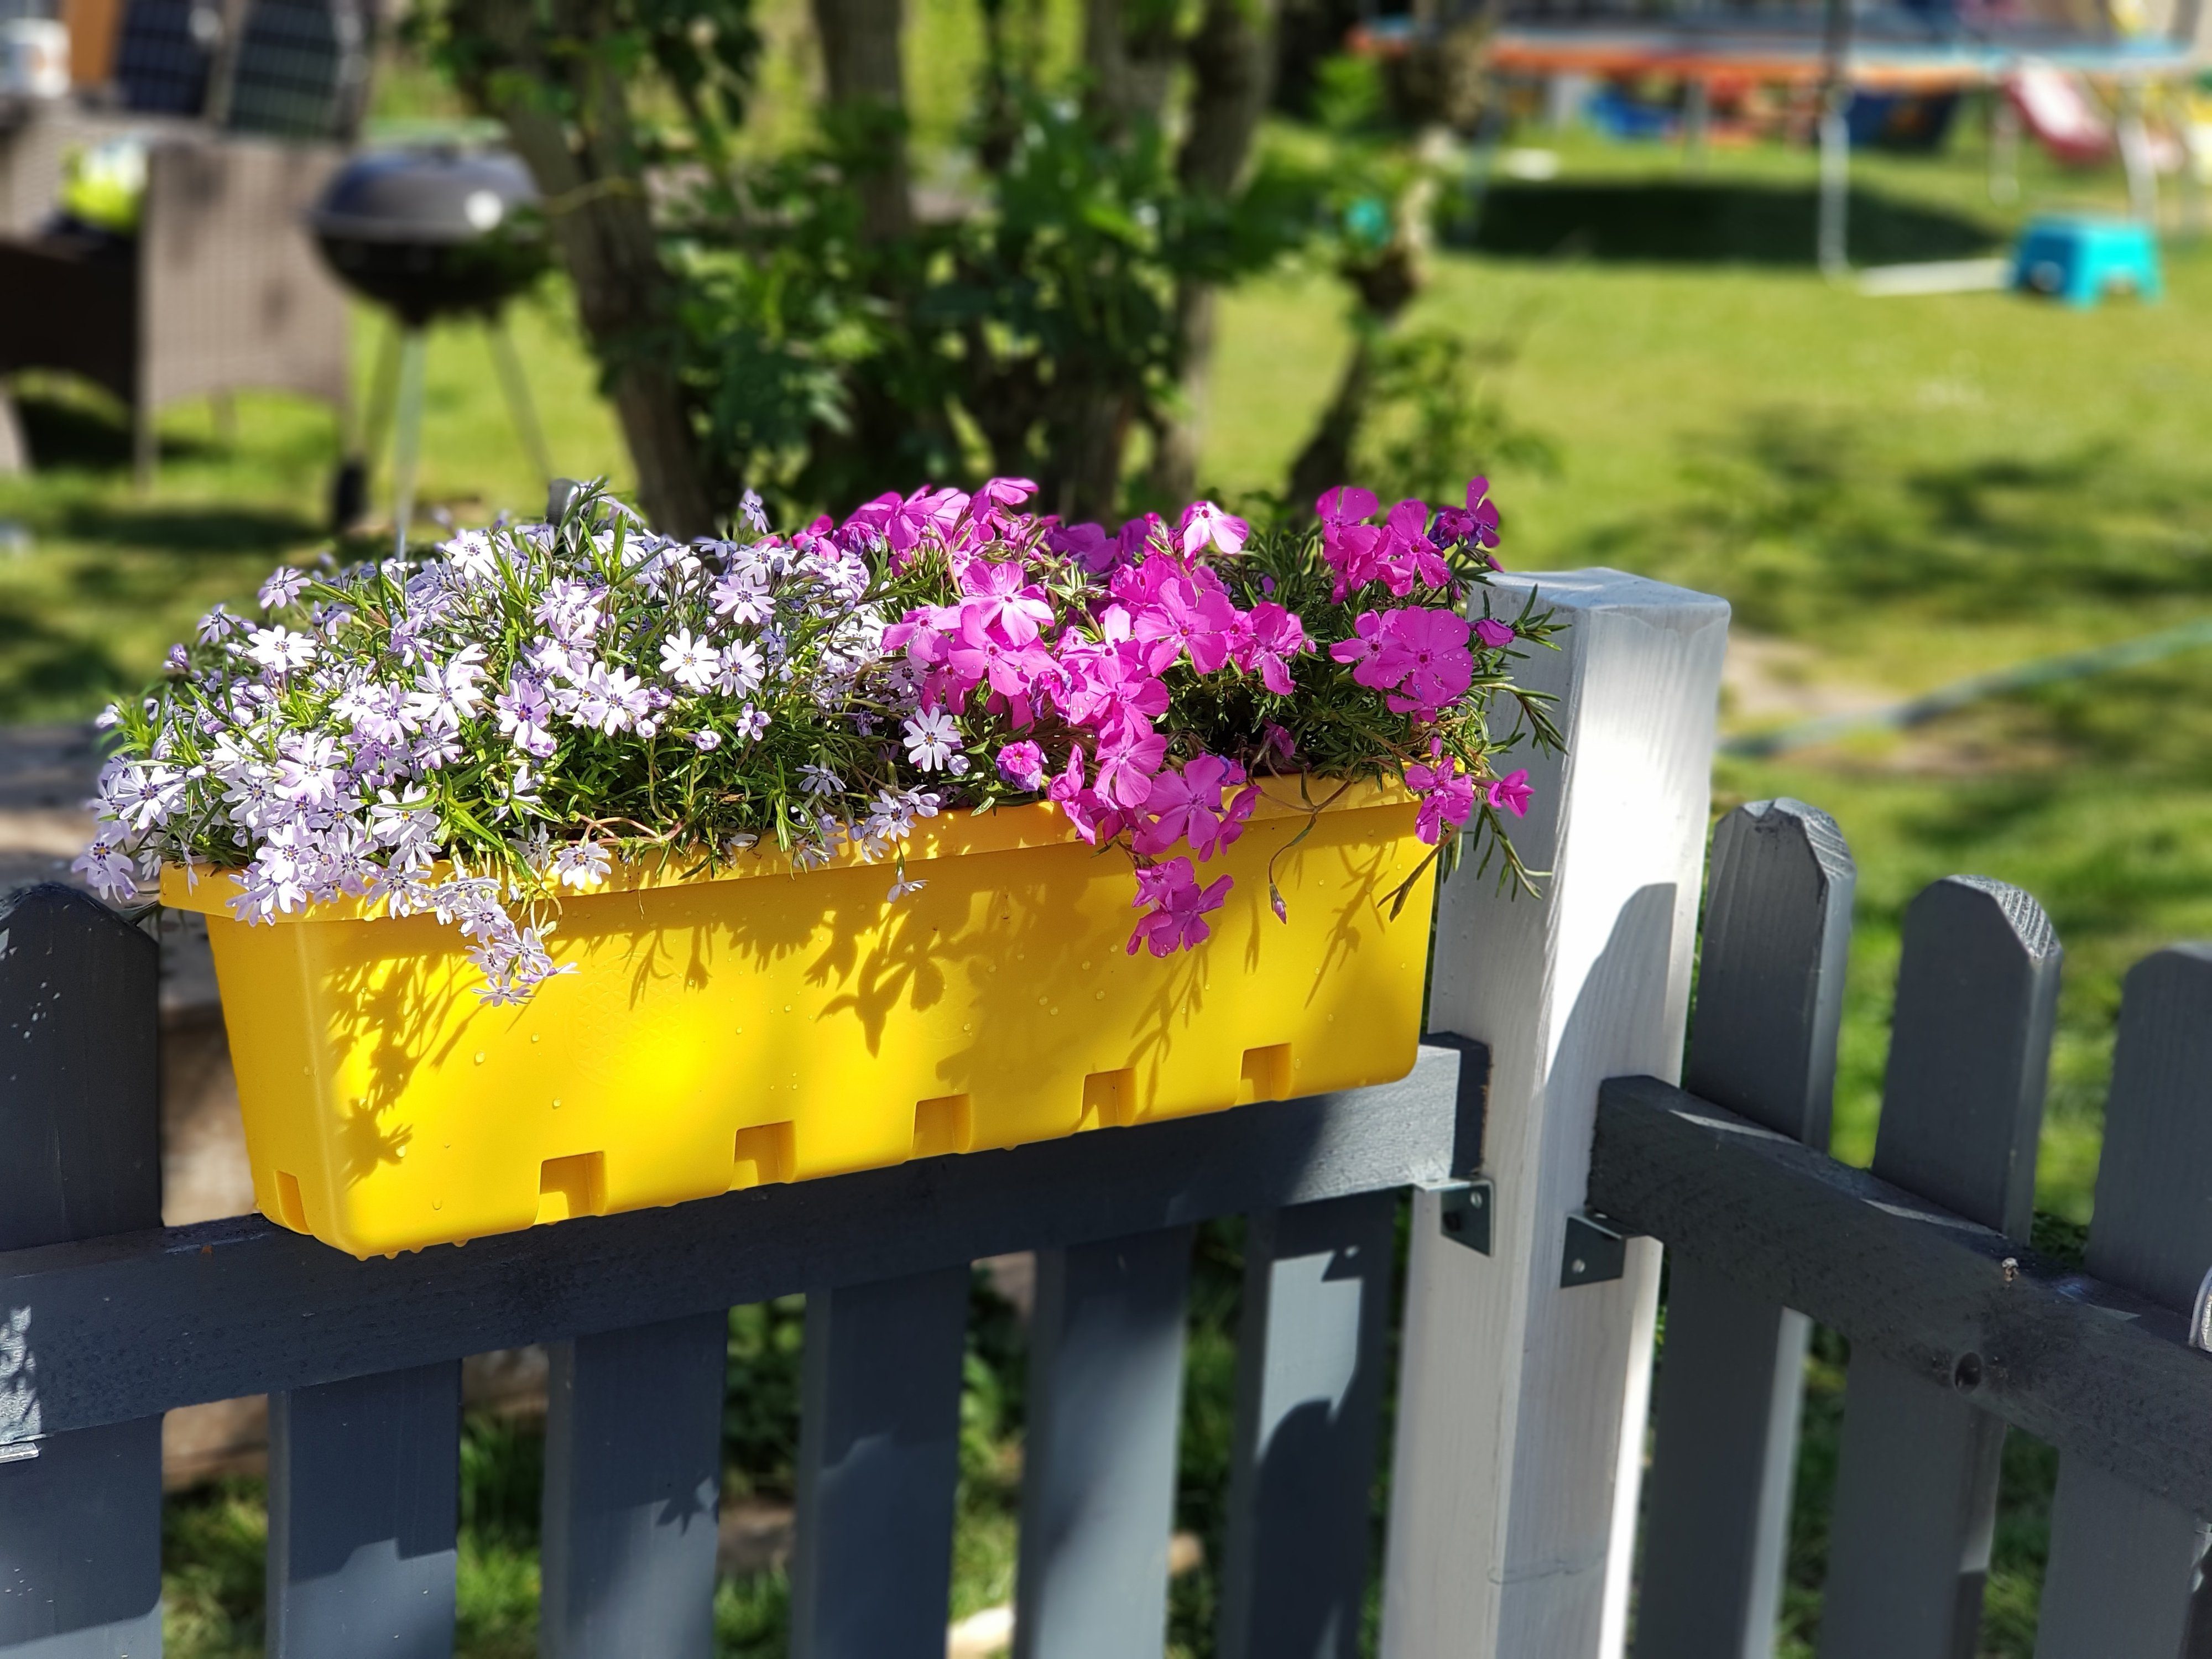 GREENLIFE® Blumenkasten Blumenkasten / 3 (3er Kräuterbox Stück Set), Zwischenboden integrierter